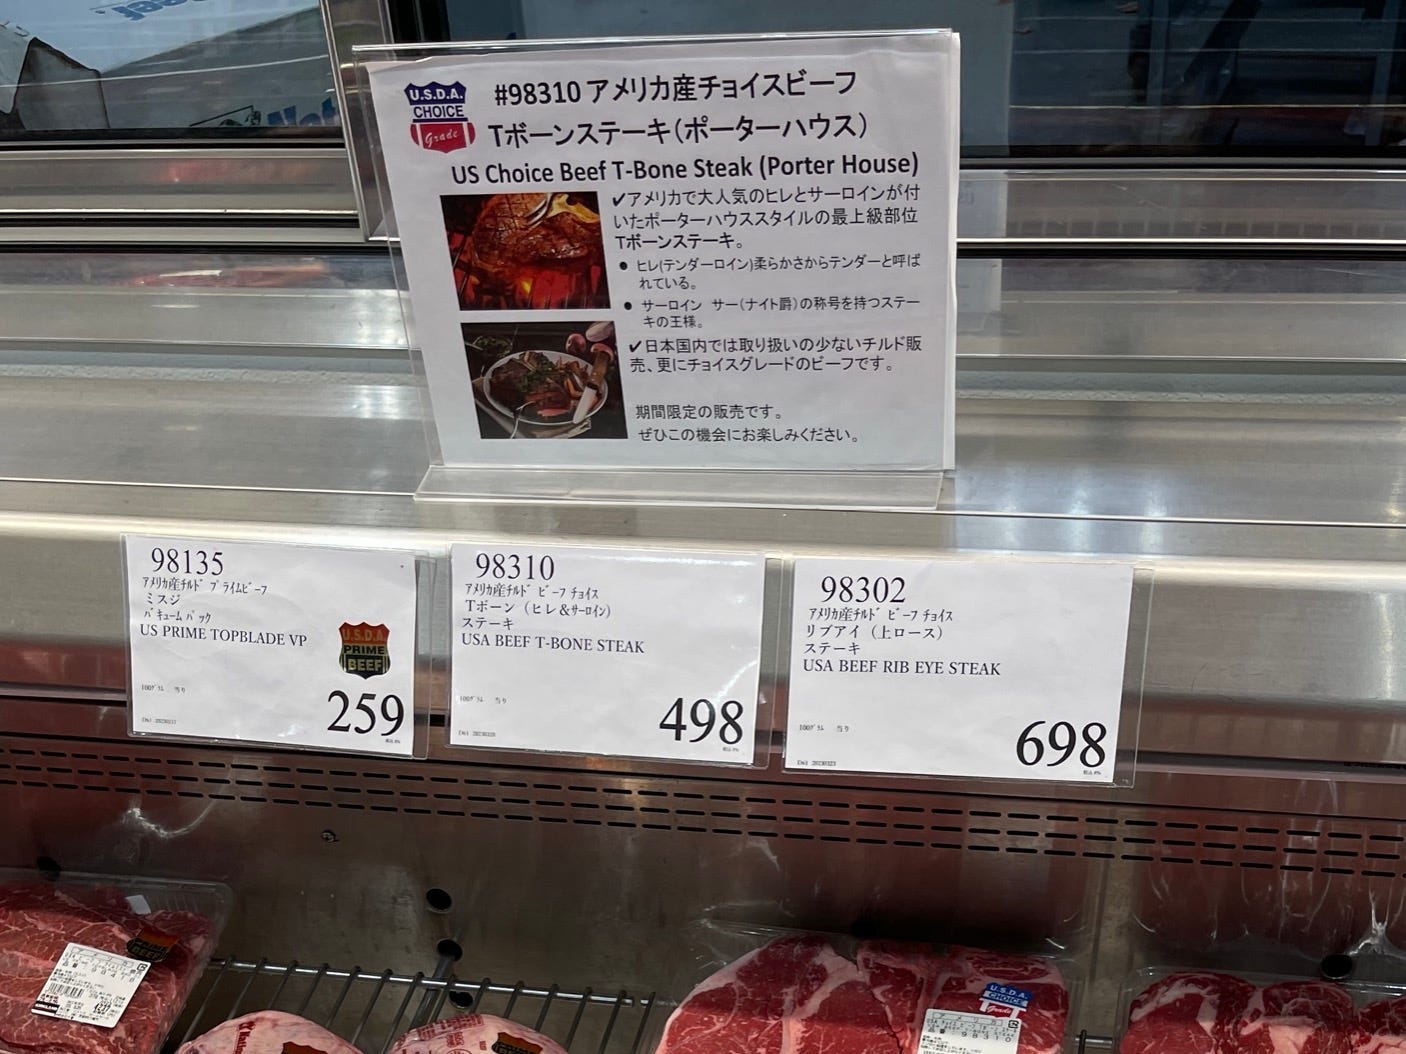 Viele der Fleischsorten waren im Wesentlichen USDA-zertifiziert, was interessant anzusehen war, wenn man bedenkt, dass Japan die Heimat des Wagyu-Rindfleischs ist.